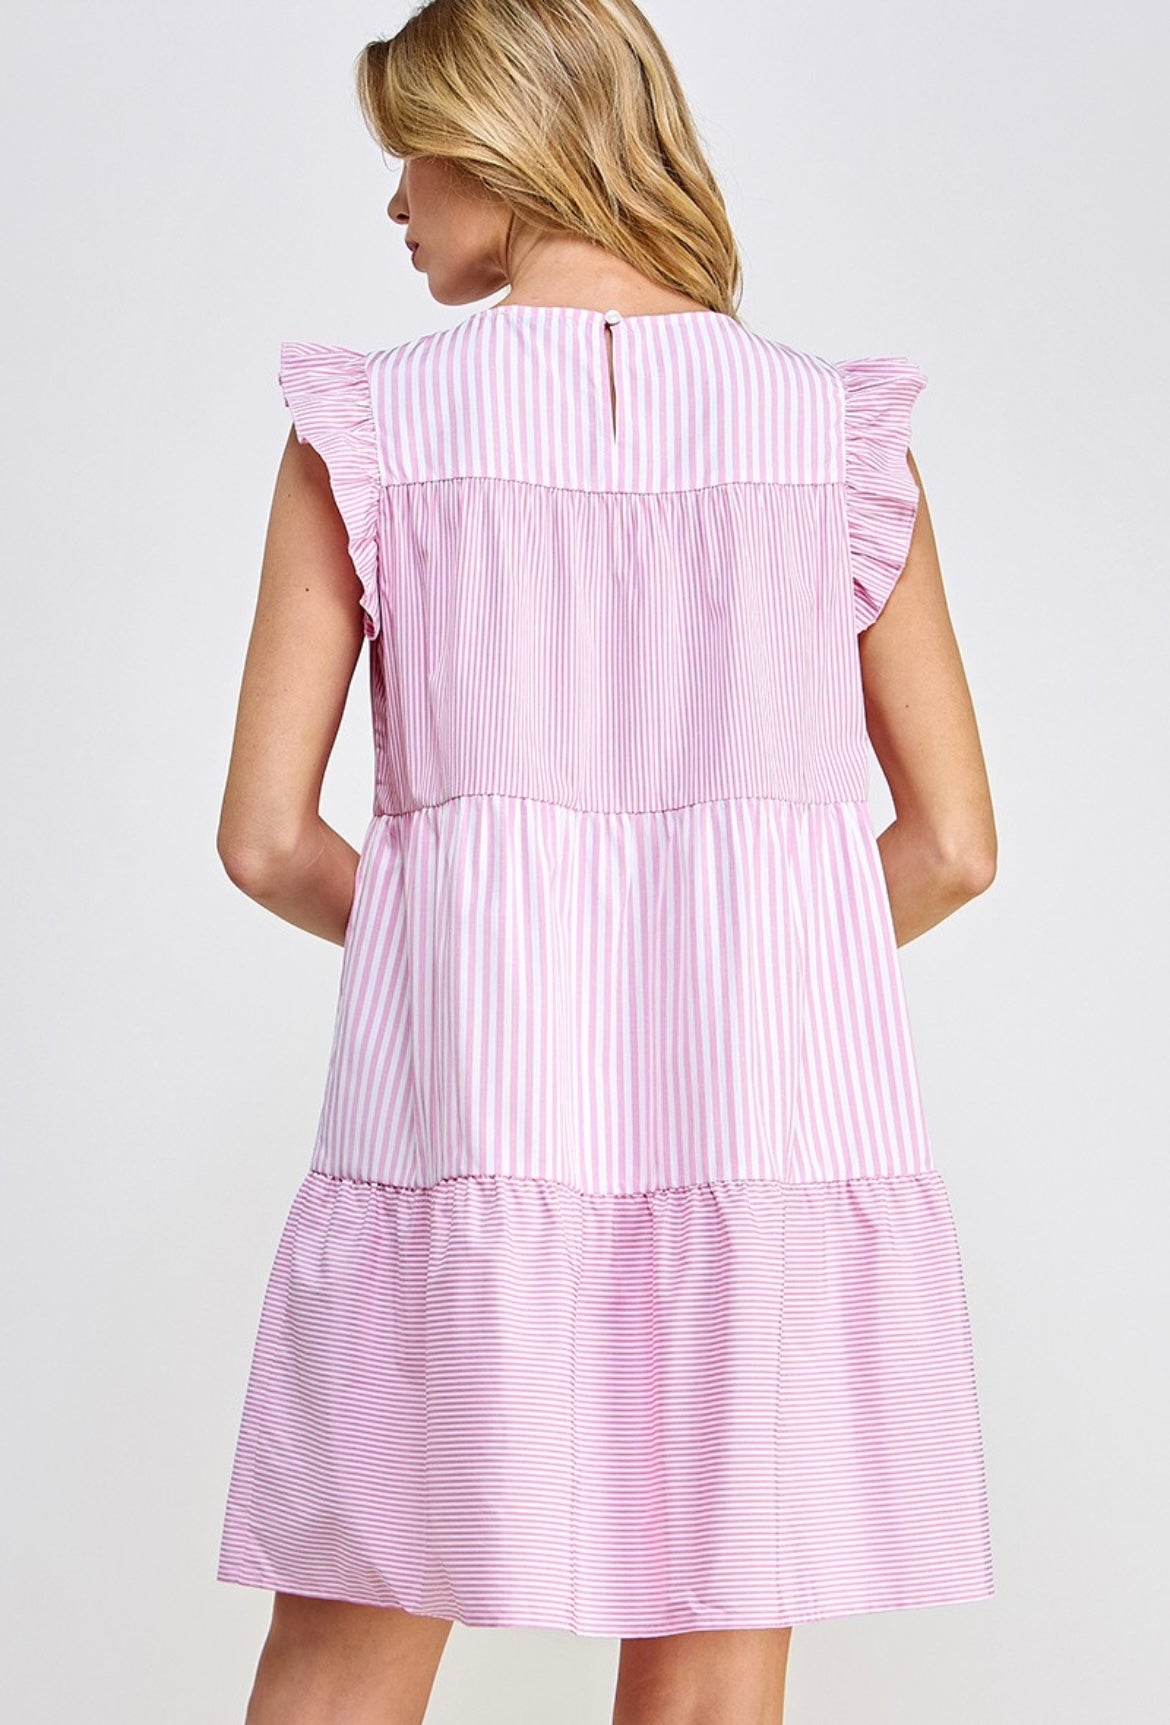 Ruffled Cap Sleeve Mini Dress - Pink